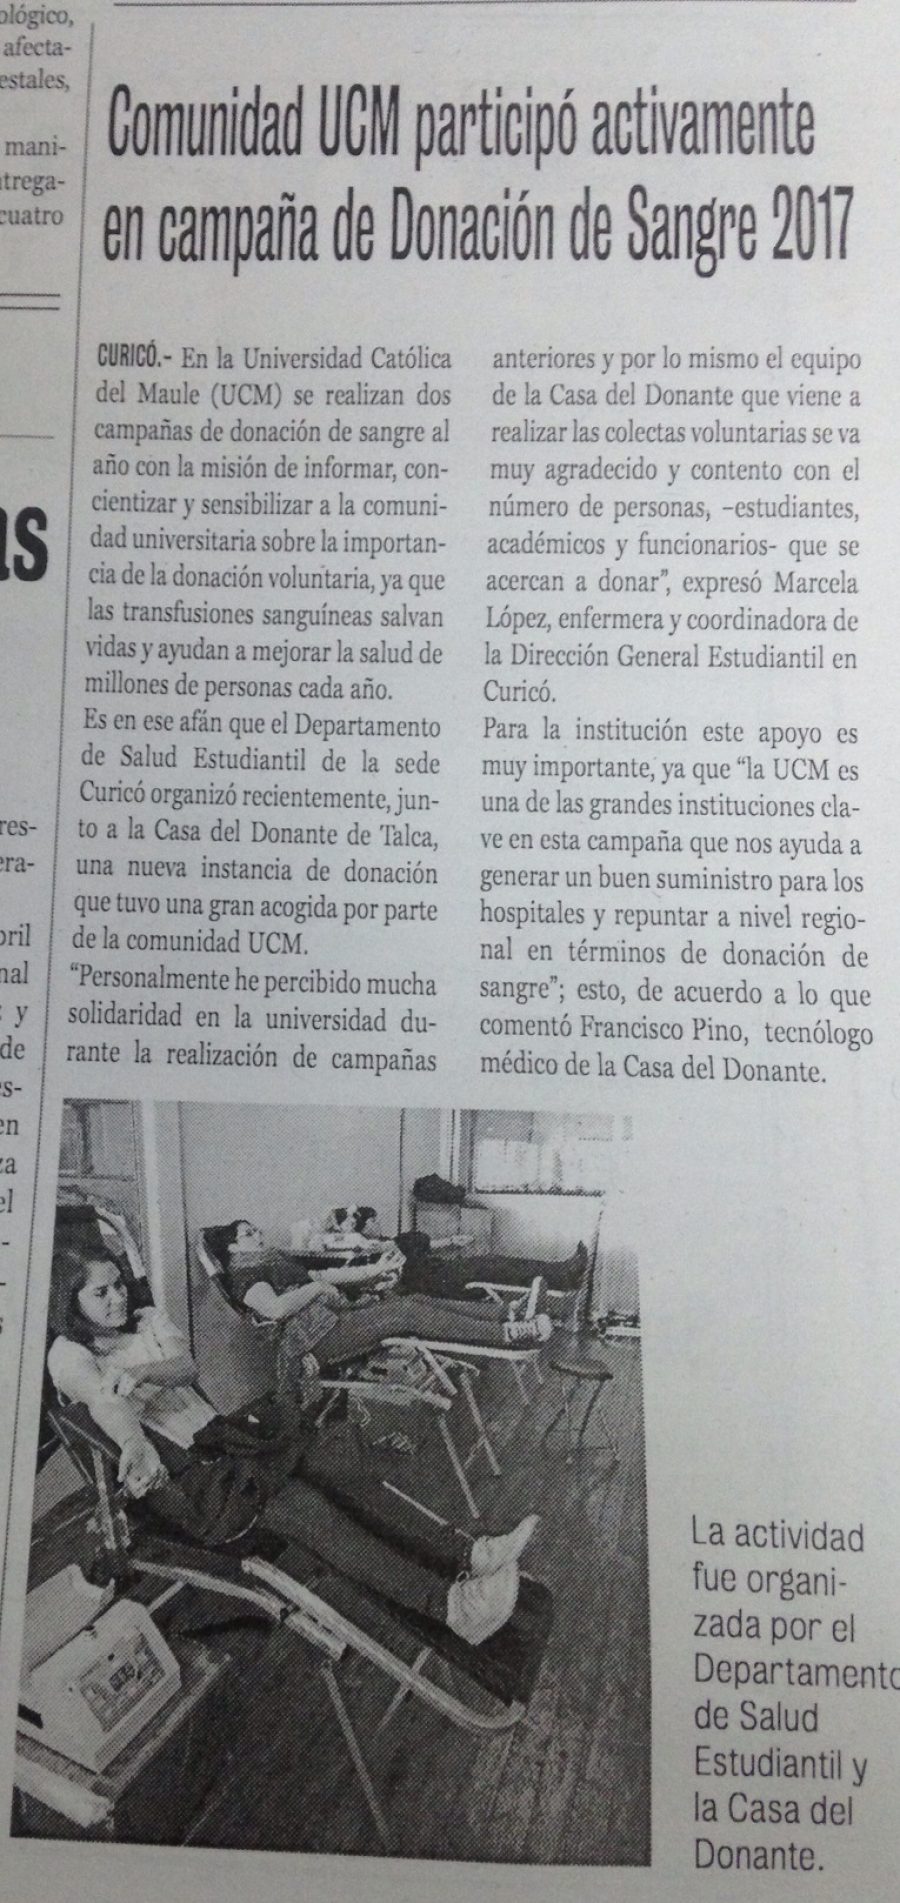 11 de mayo en Diario La Prensa: “Comunidad UCM participó activamente en campaña de Donación de Sangre 2017”